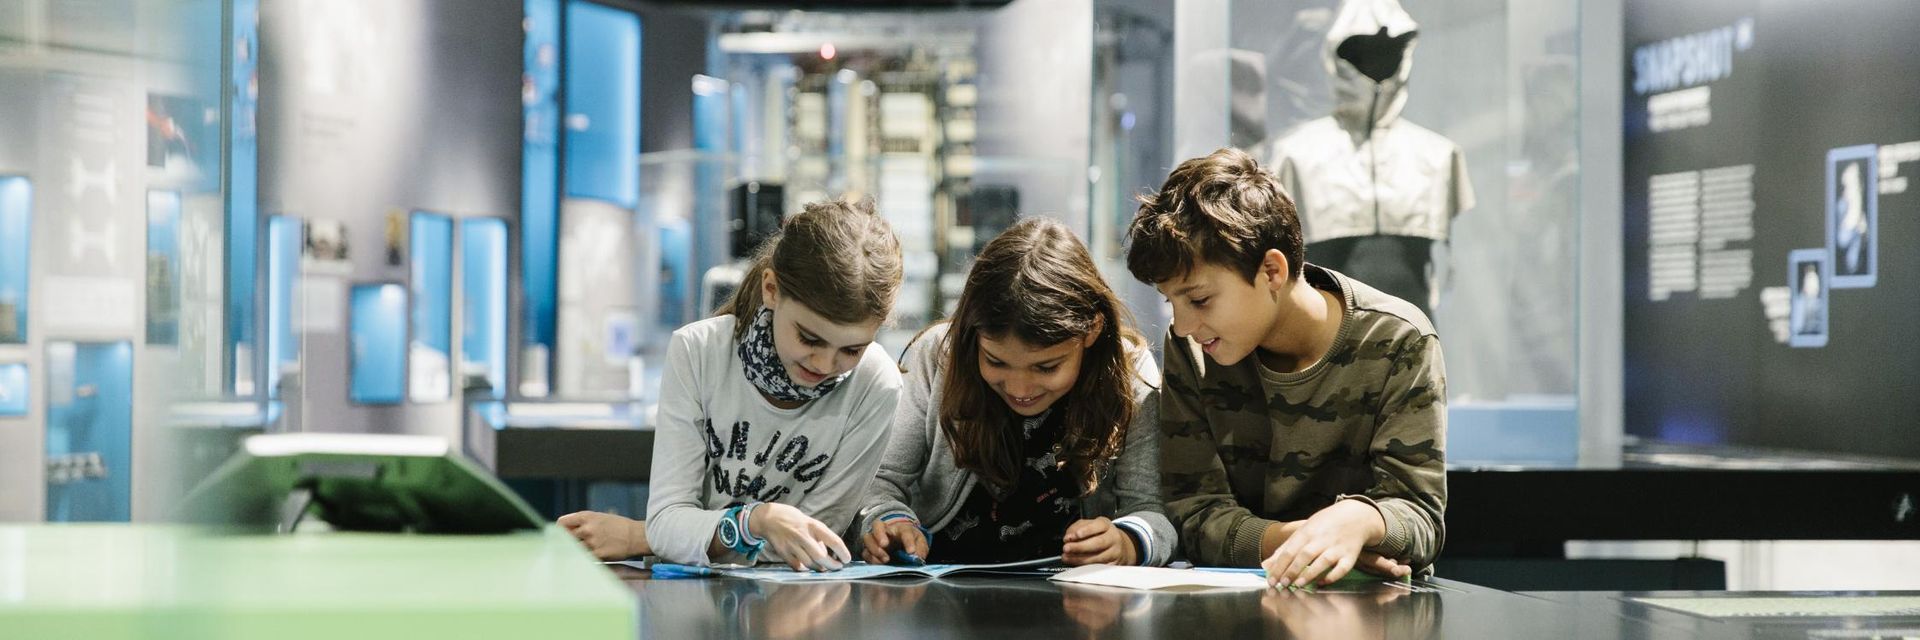 Drei Kinder stehen, konzentriert über ein Heft gebeugt, in der Ausstellung. Im Hintergrund sieht man Vitrinen, Objekte und Wandtexte.